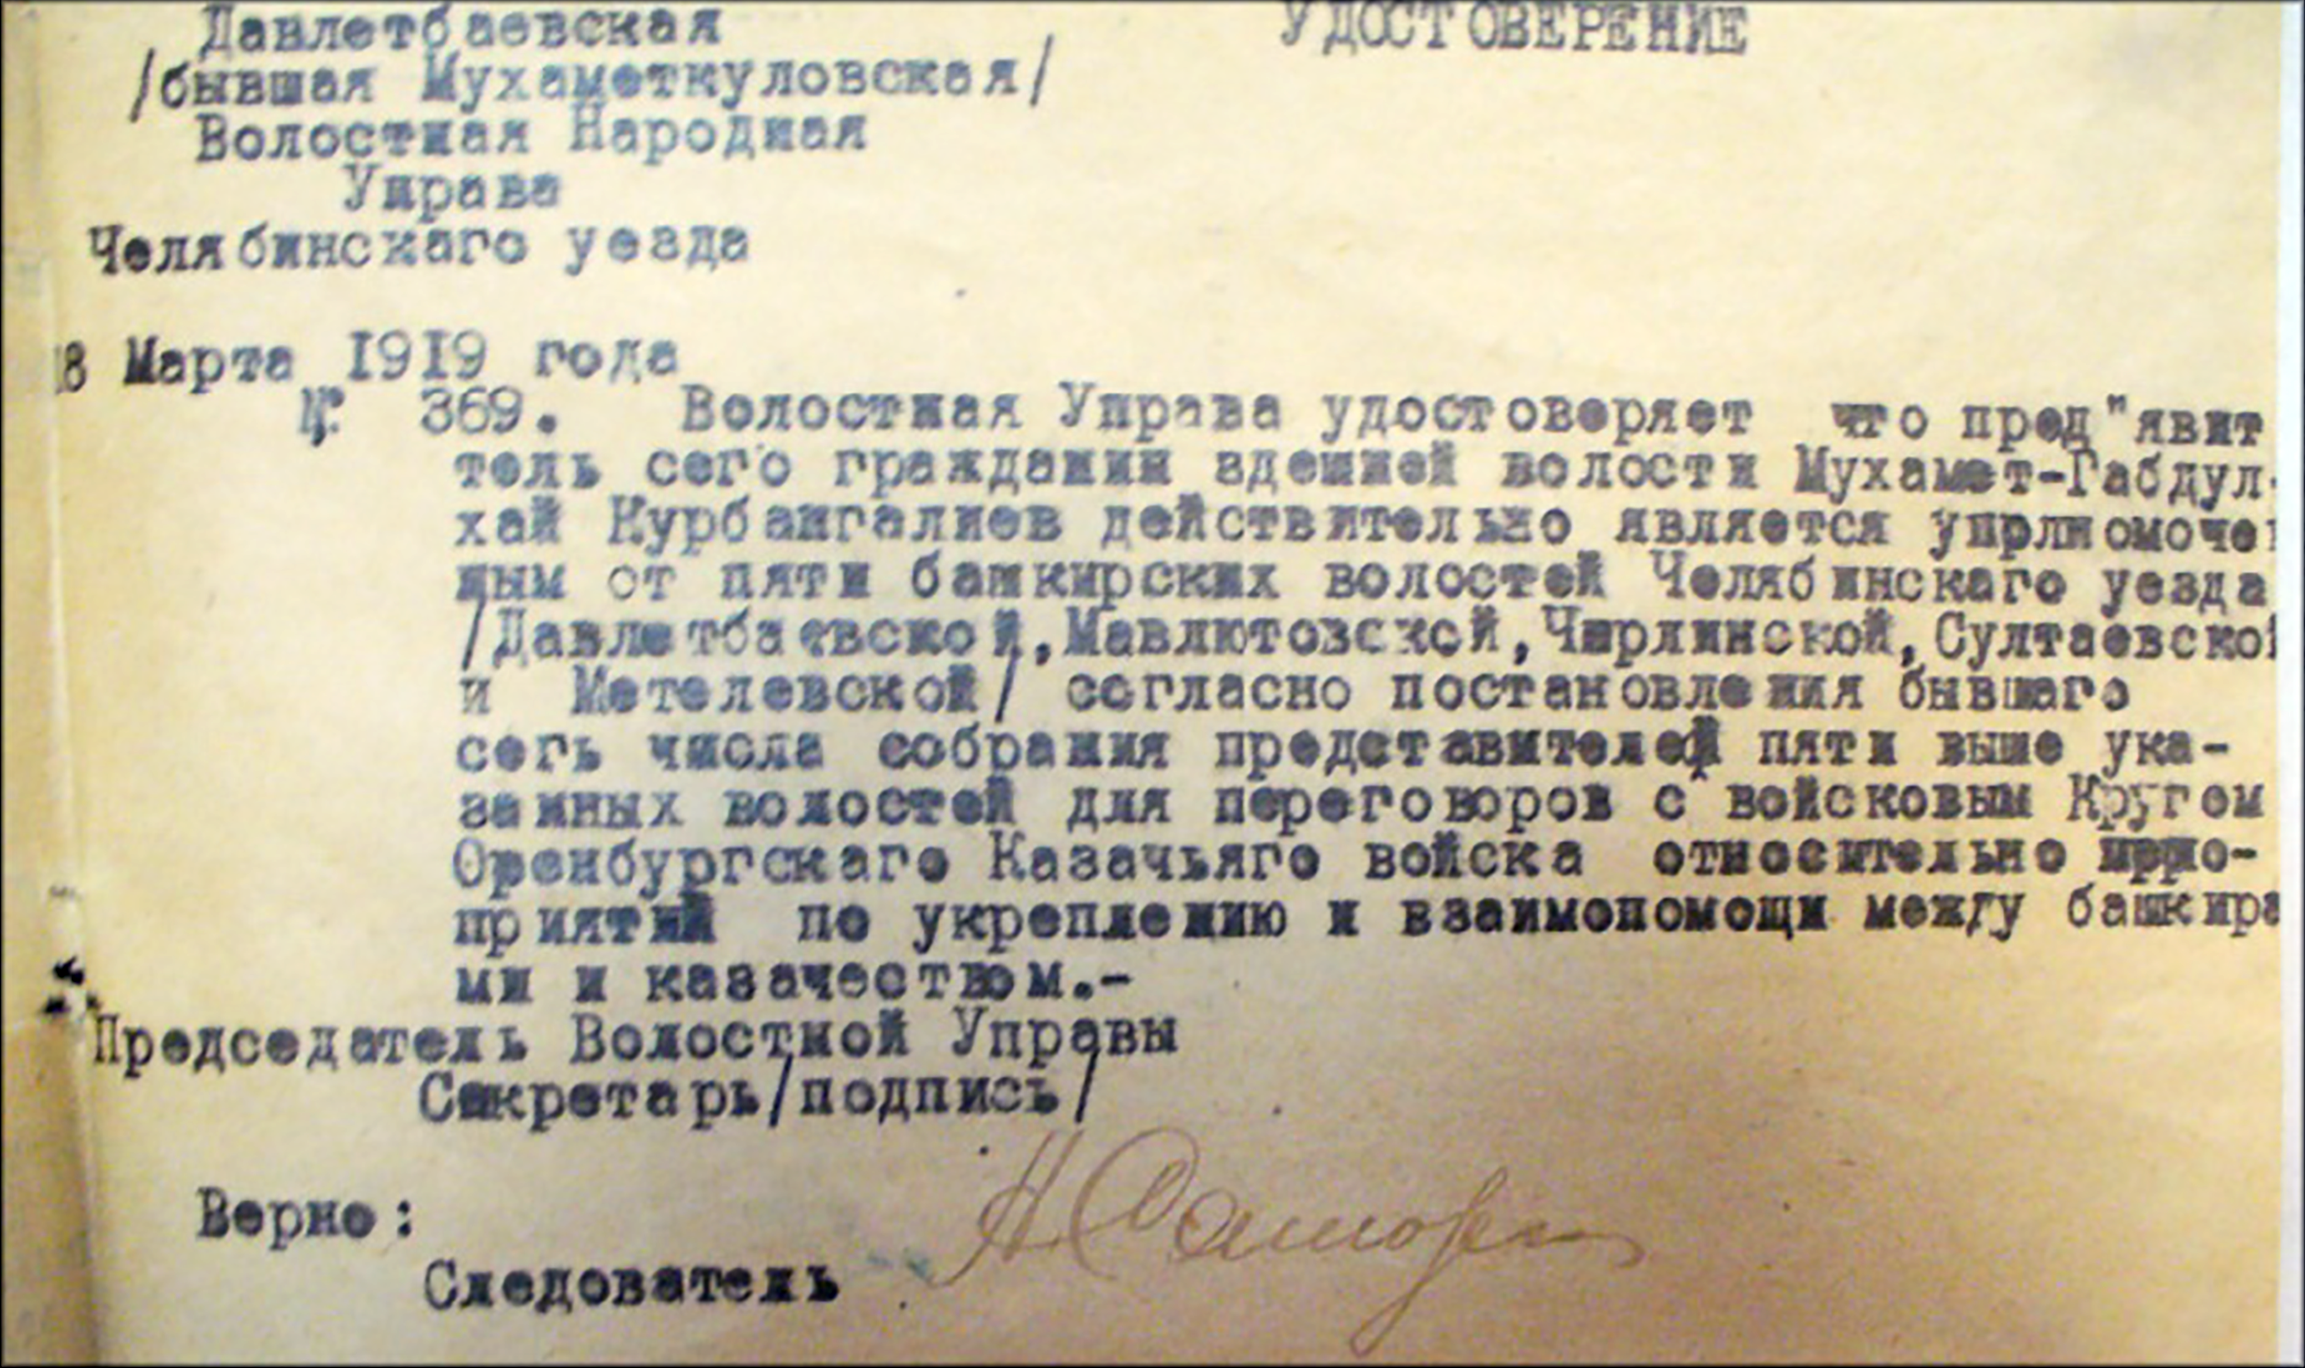 Копия удостоверения М.-Г.Курбангалиева, выданного  для поездки в Оренбург по вопросу создания  «Казацко-Башкирского союза»